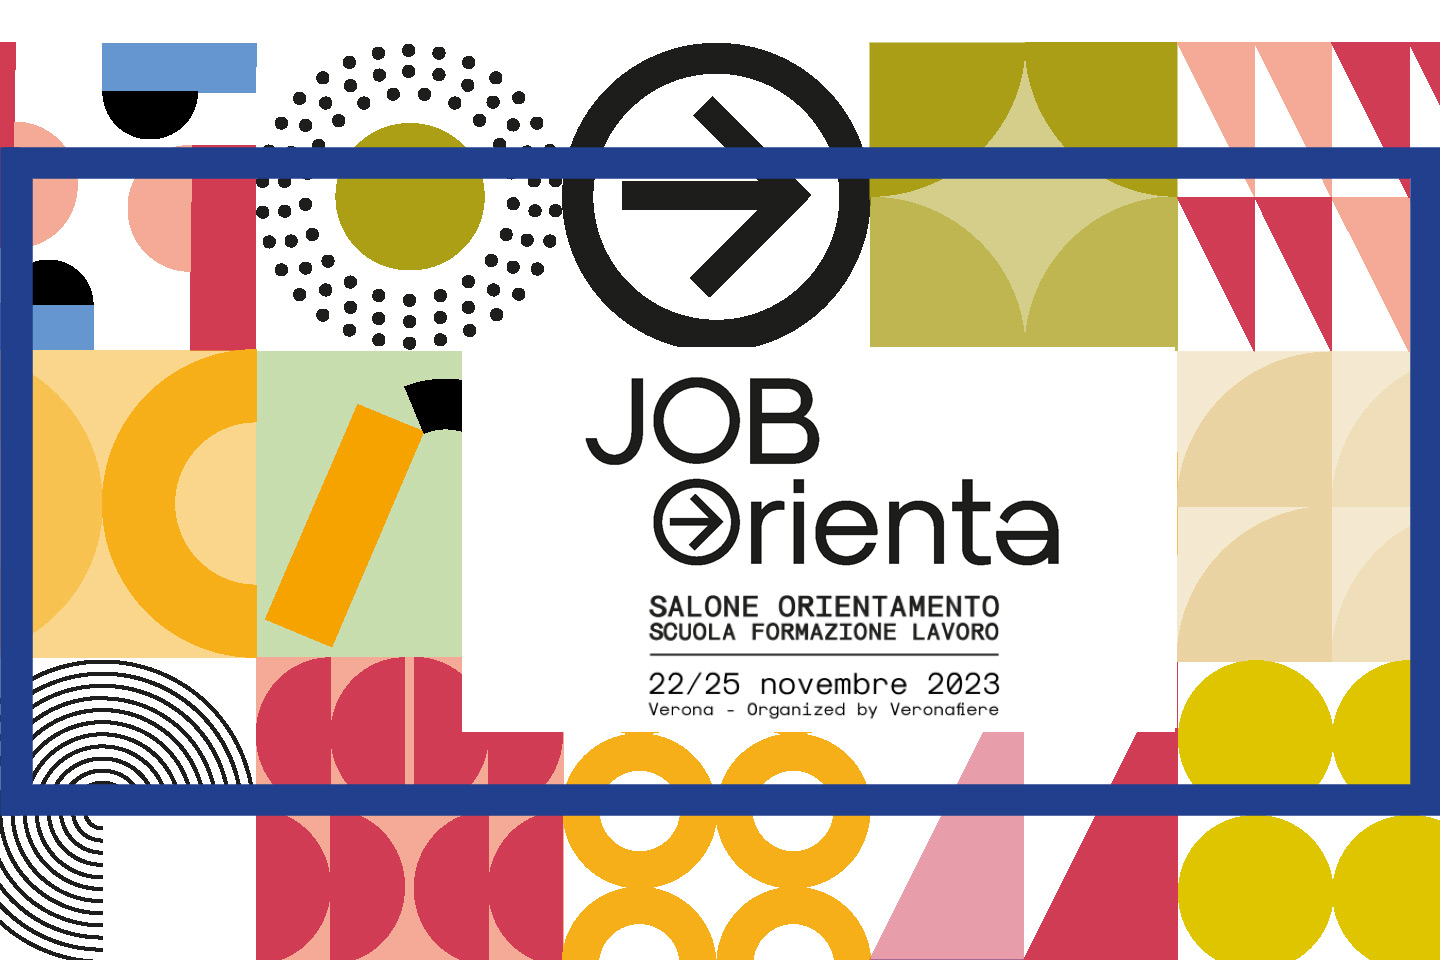 imm-job-orienta-2023-its